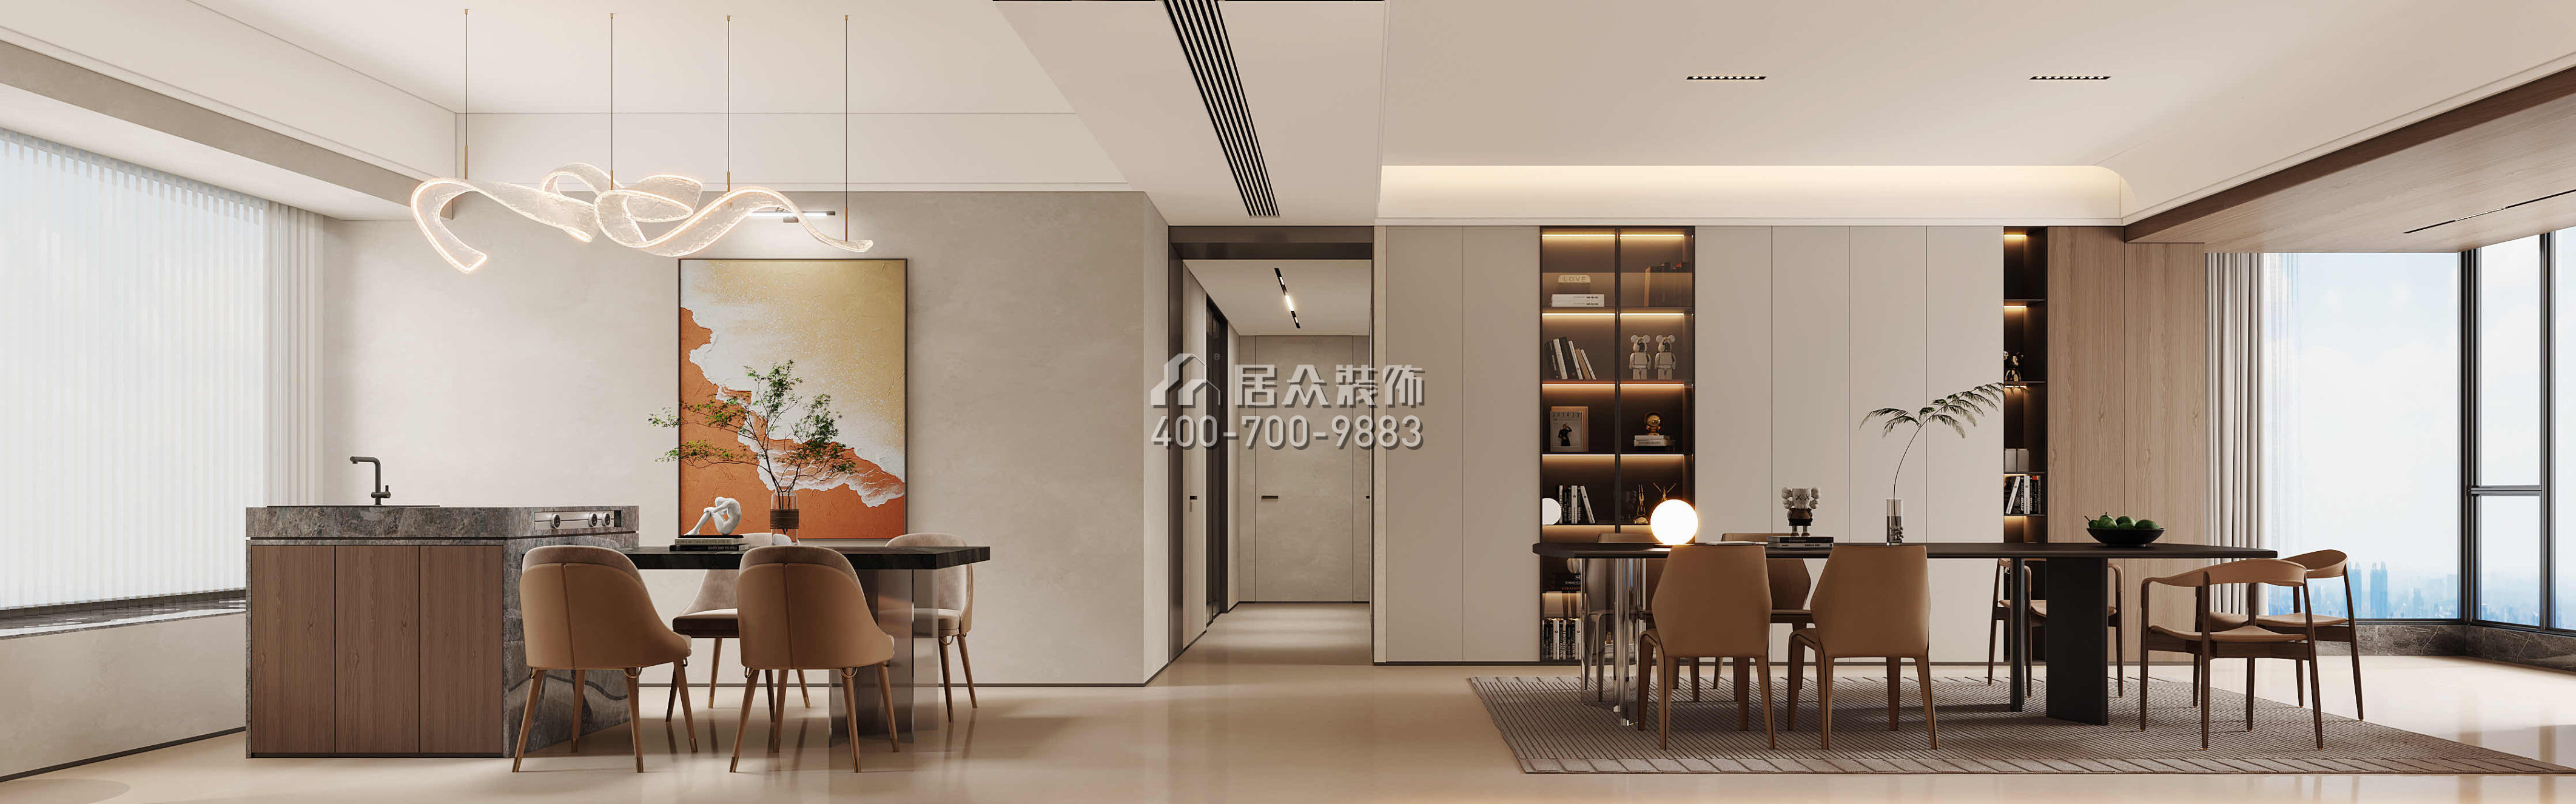 天健天驕南苑210平方米現代簡約風格平層戶型客餐廳一體裝修效果圖